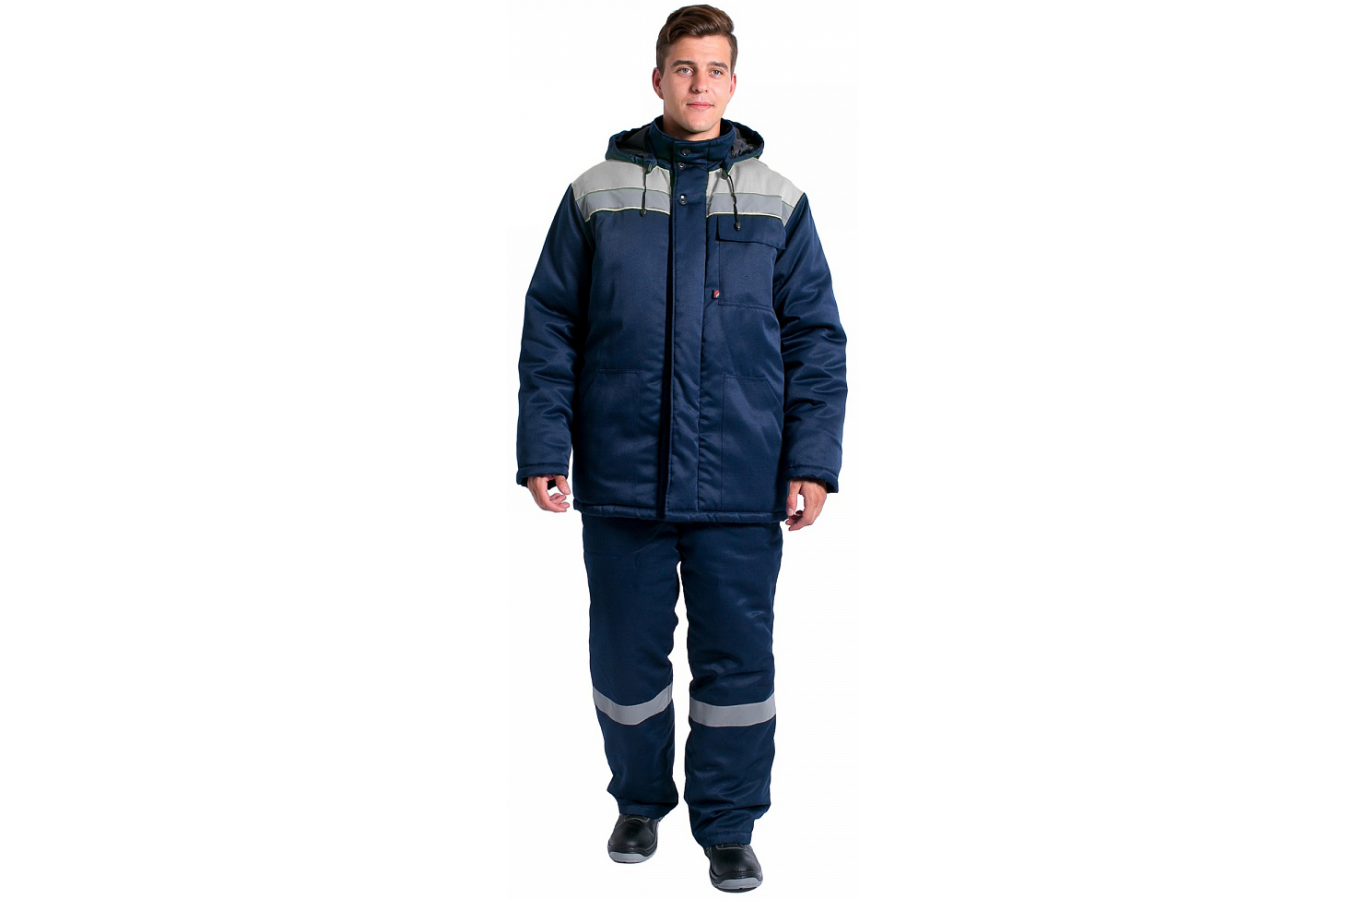 Куртка зимняя Эксперт-Люкс NEW (тк.Смесовая,210), т.синий/серый